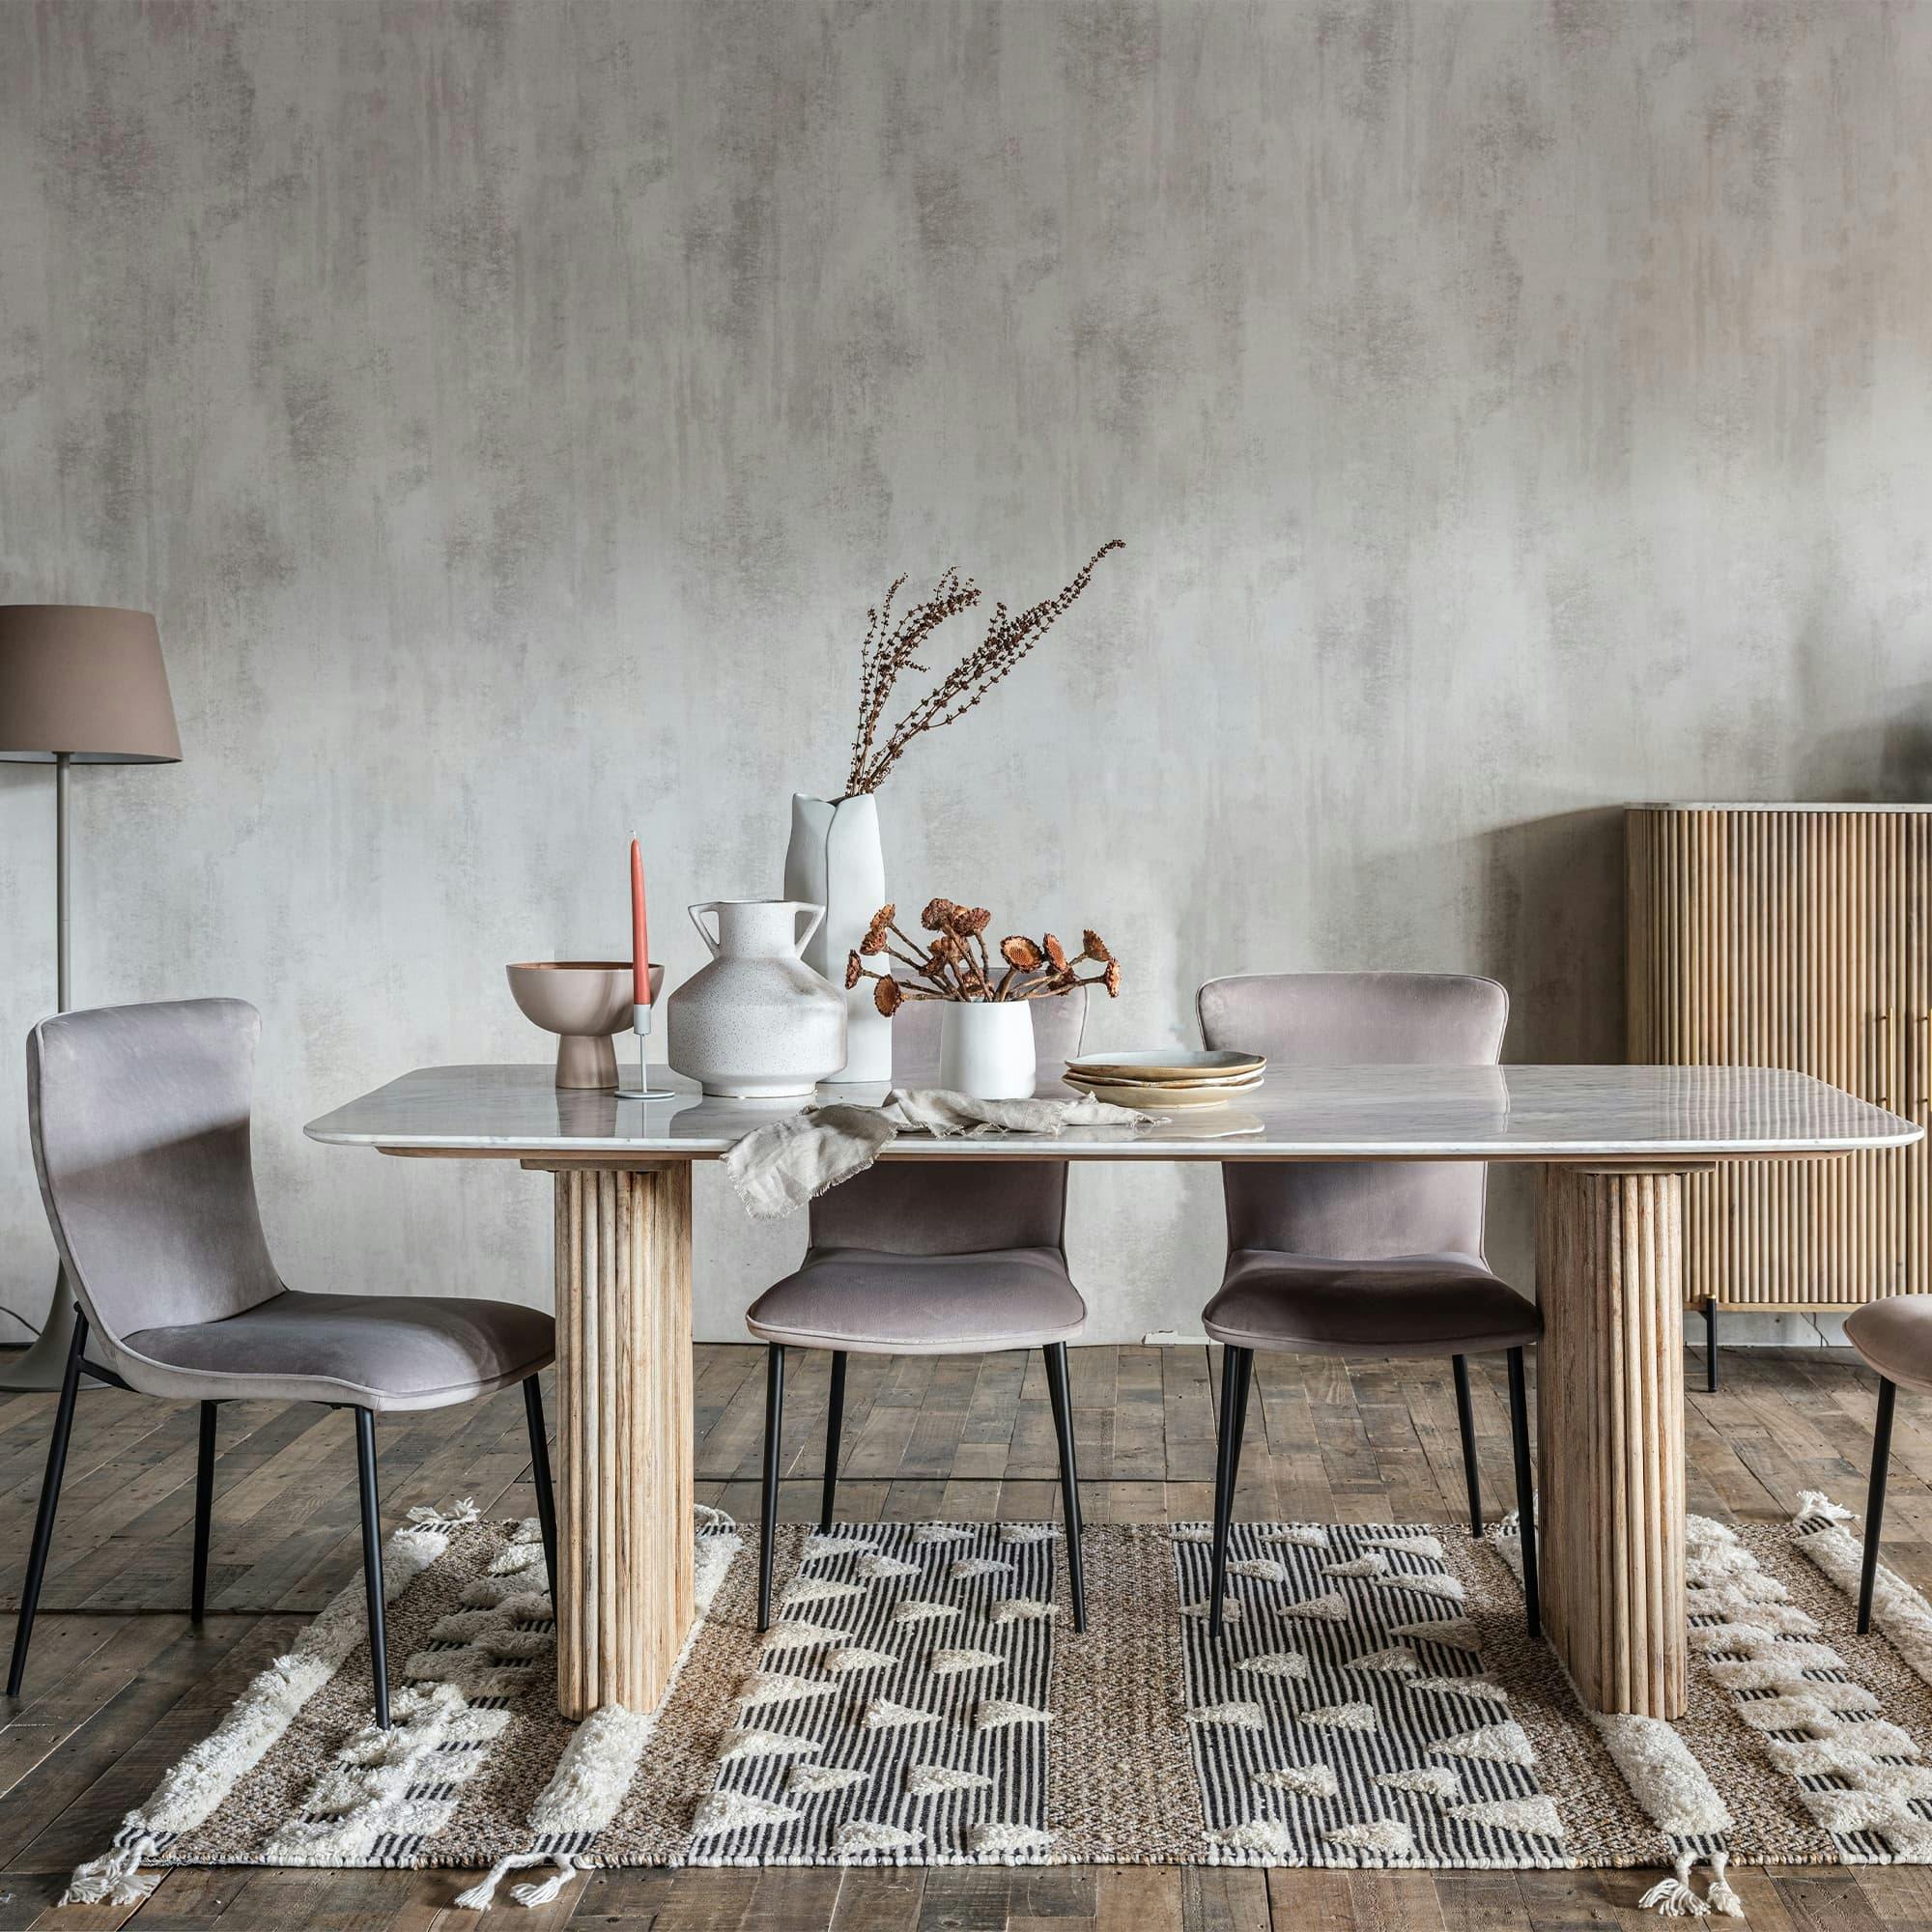 Table à manger en bois pour embellir votre salle à manger